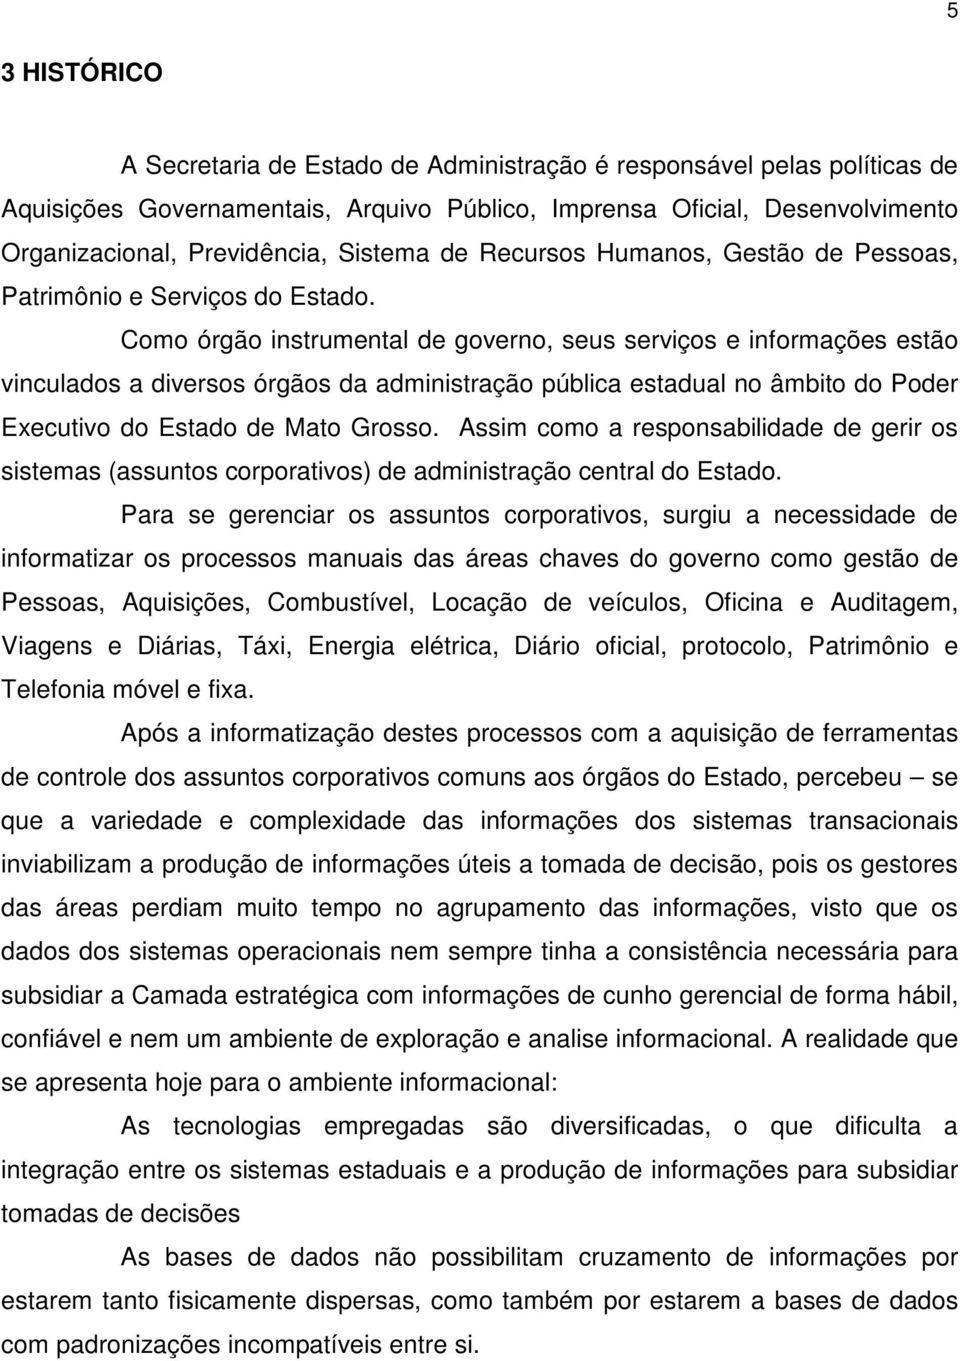 Como órgão instrumental de governo, seus serviços e informações estão vinculados a diversos órgãos da administração pública estadual no âmbito do Poder Executivo do Estado de Mato Grosso.